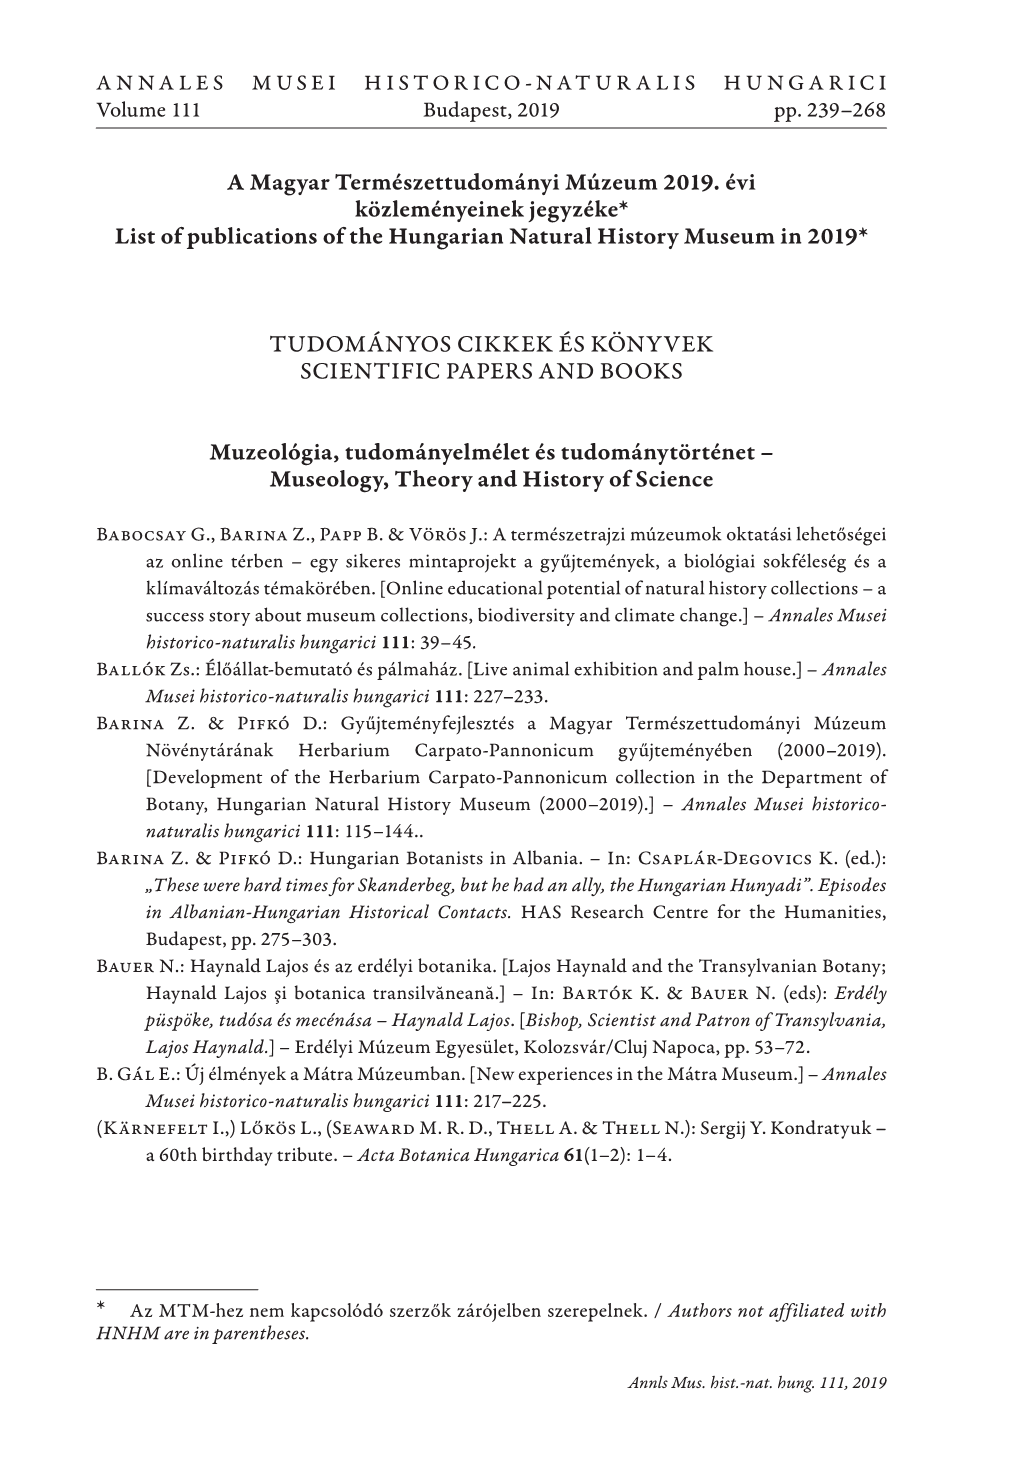 A Magyar Természettudományi Múzeum 2019. Évi Közleményeinek Jegyzéke* List of Publications of the Hungarian Natural History Museum in 2019*